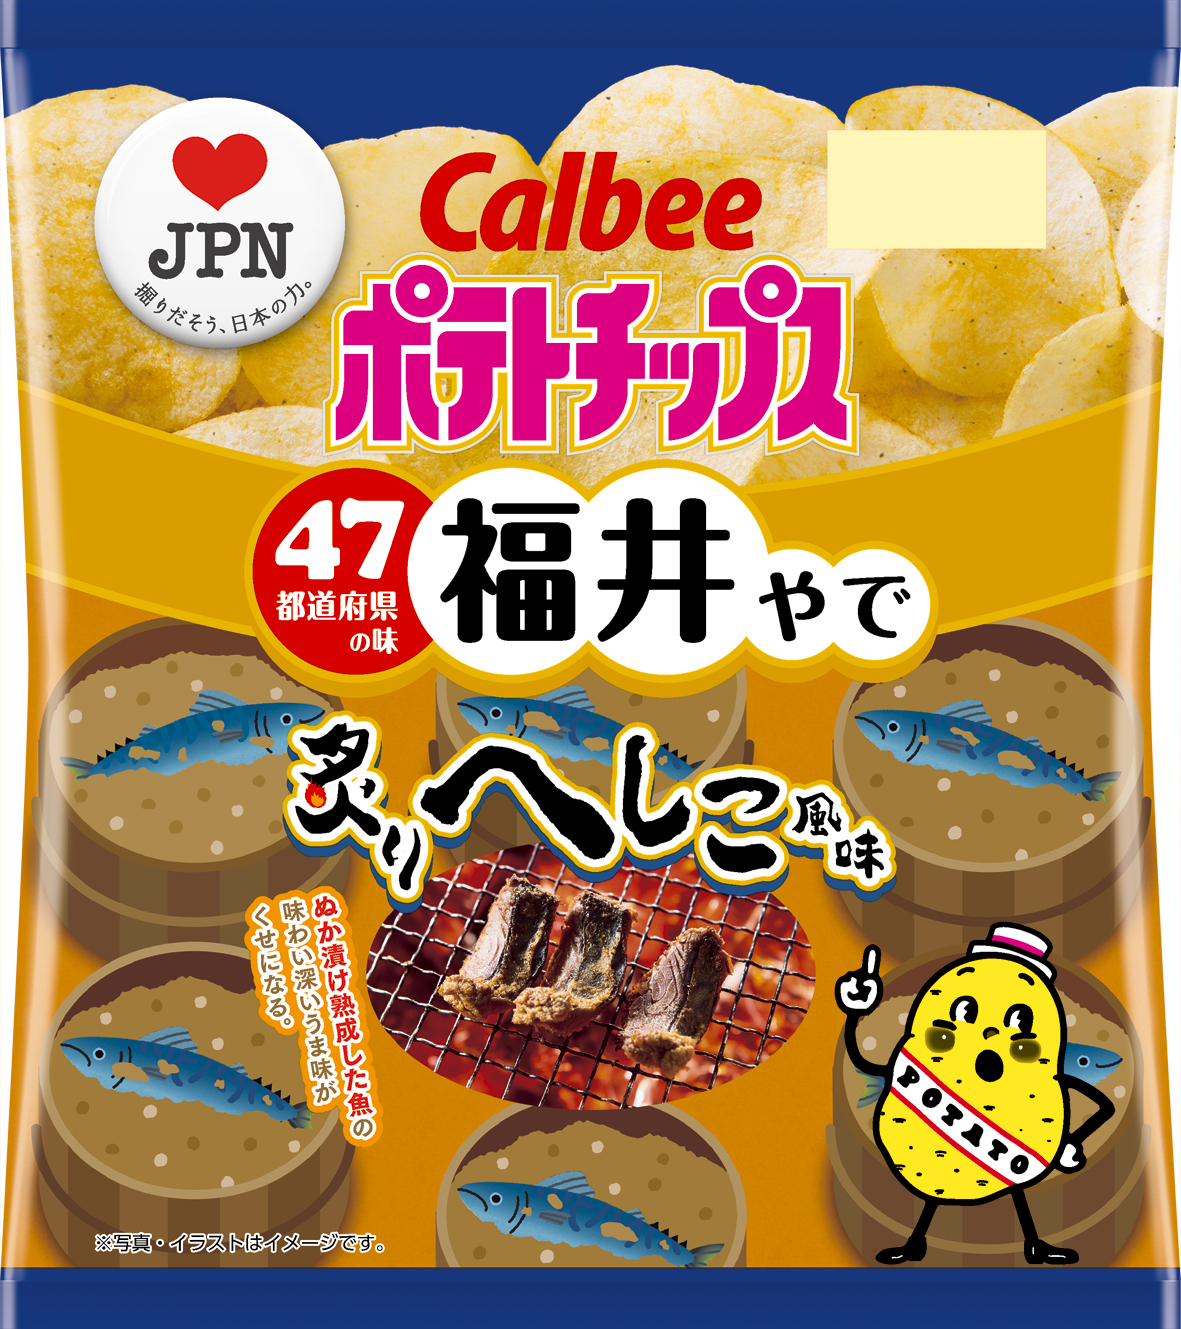 カルビーラブｊｐｎ企画 福井の味は ポテトチップス 炙りへしこ風味 19年11月18日 月 発売 カルビー株式会社のプレスリリース